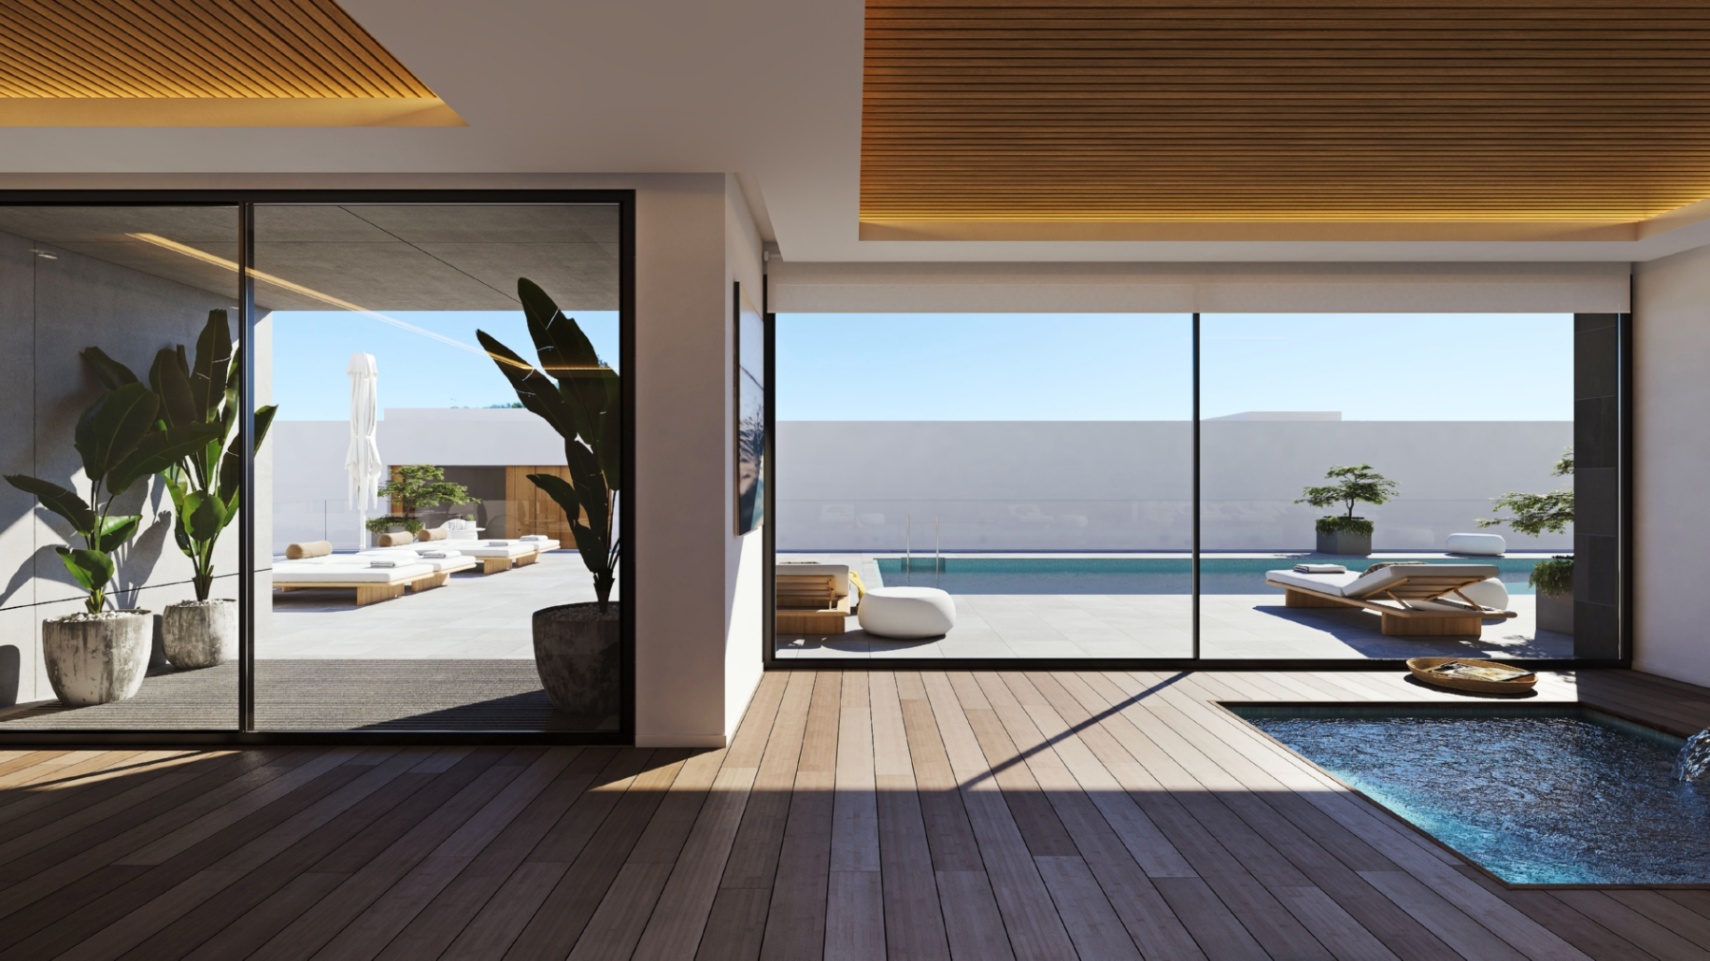 Denia : Bel appartement récemment construit avec une belle vue sur la mer à côté du golf.